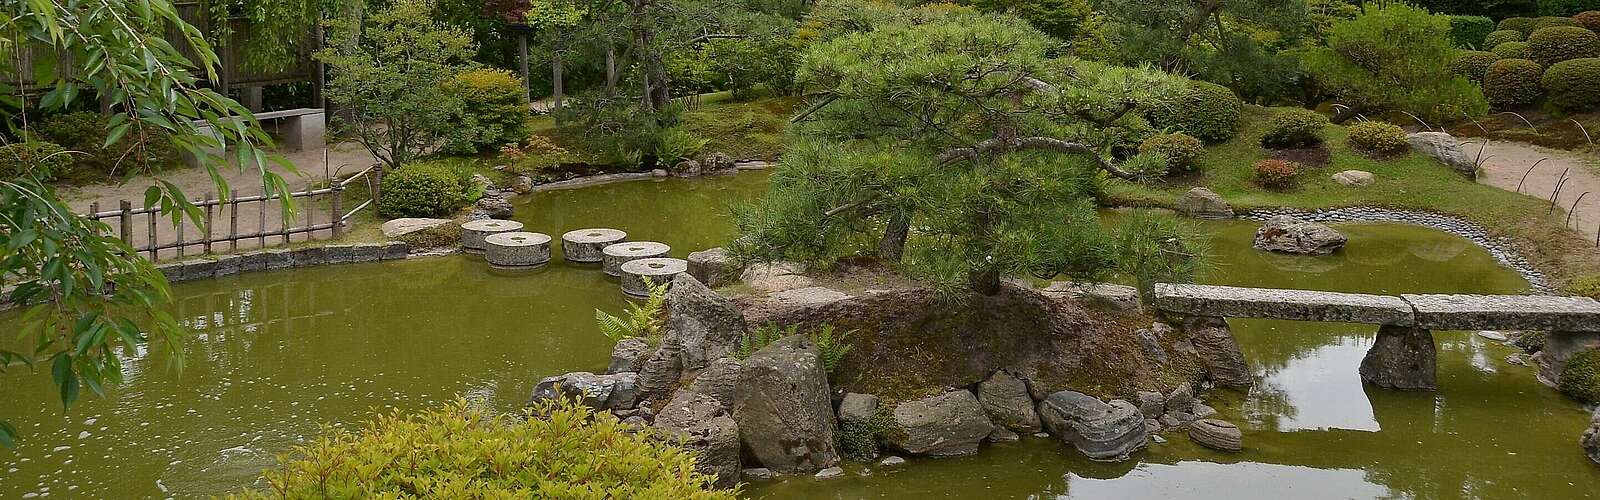 Insel mit Kiefern im japanischen Bonsaigarten,
        
    

        Foto: Fotograf / Lizenz - Media Import/Matthias Schäfer